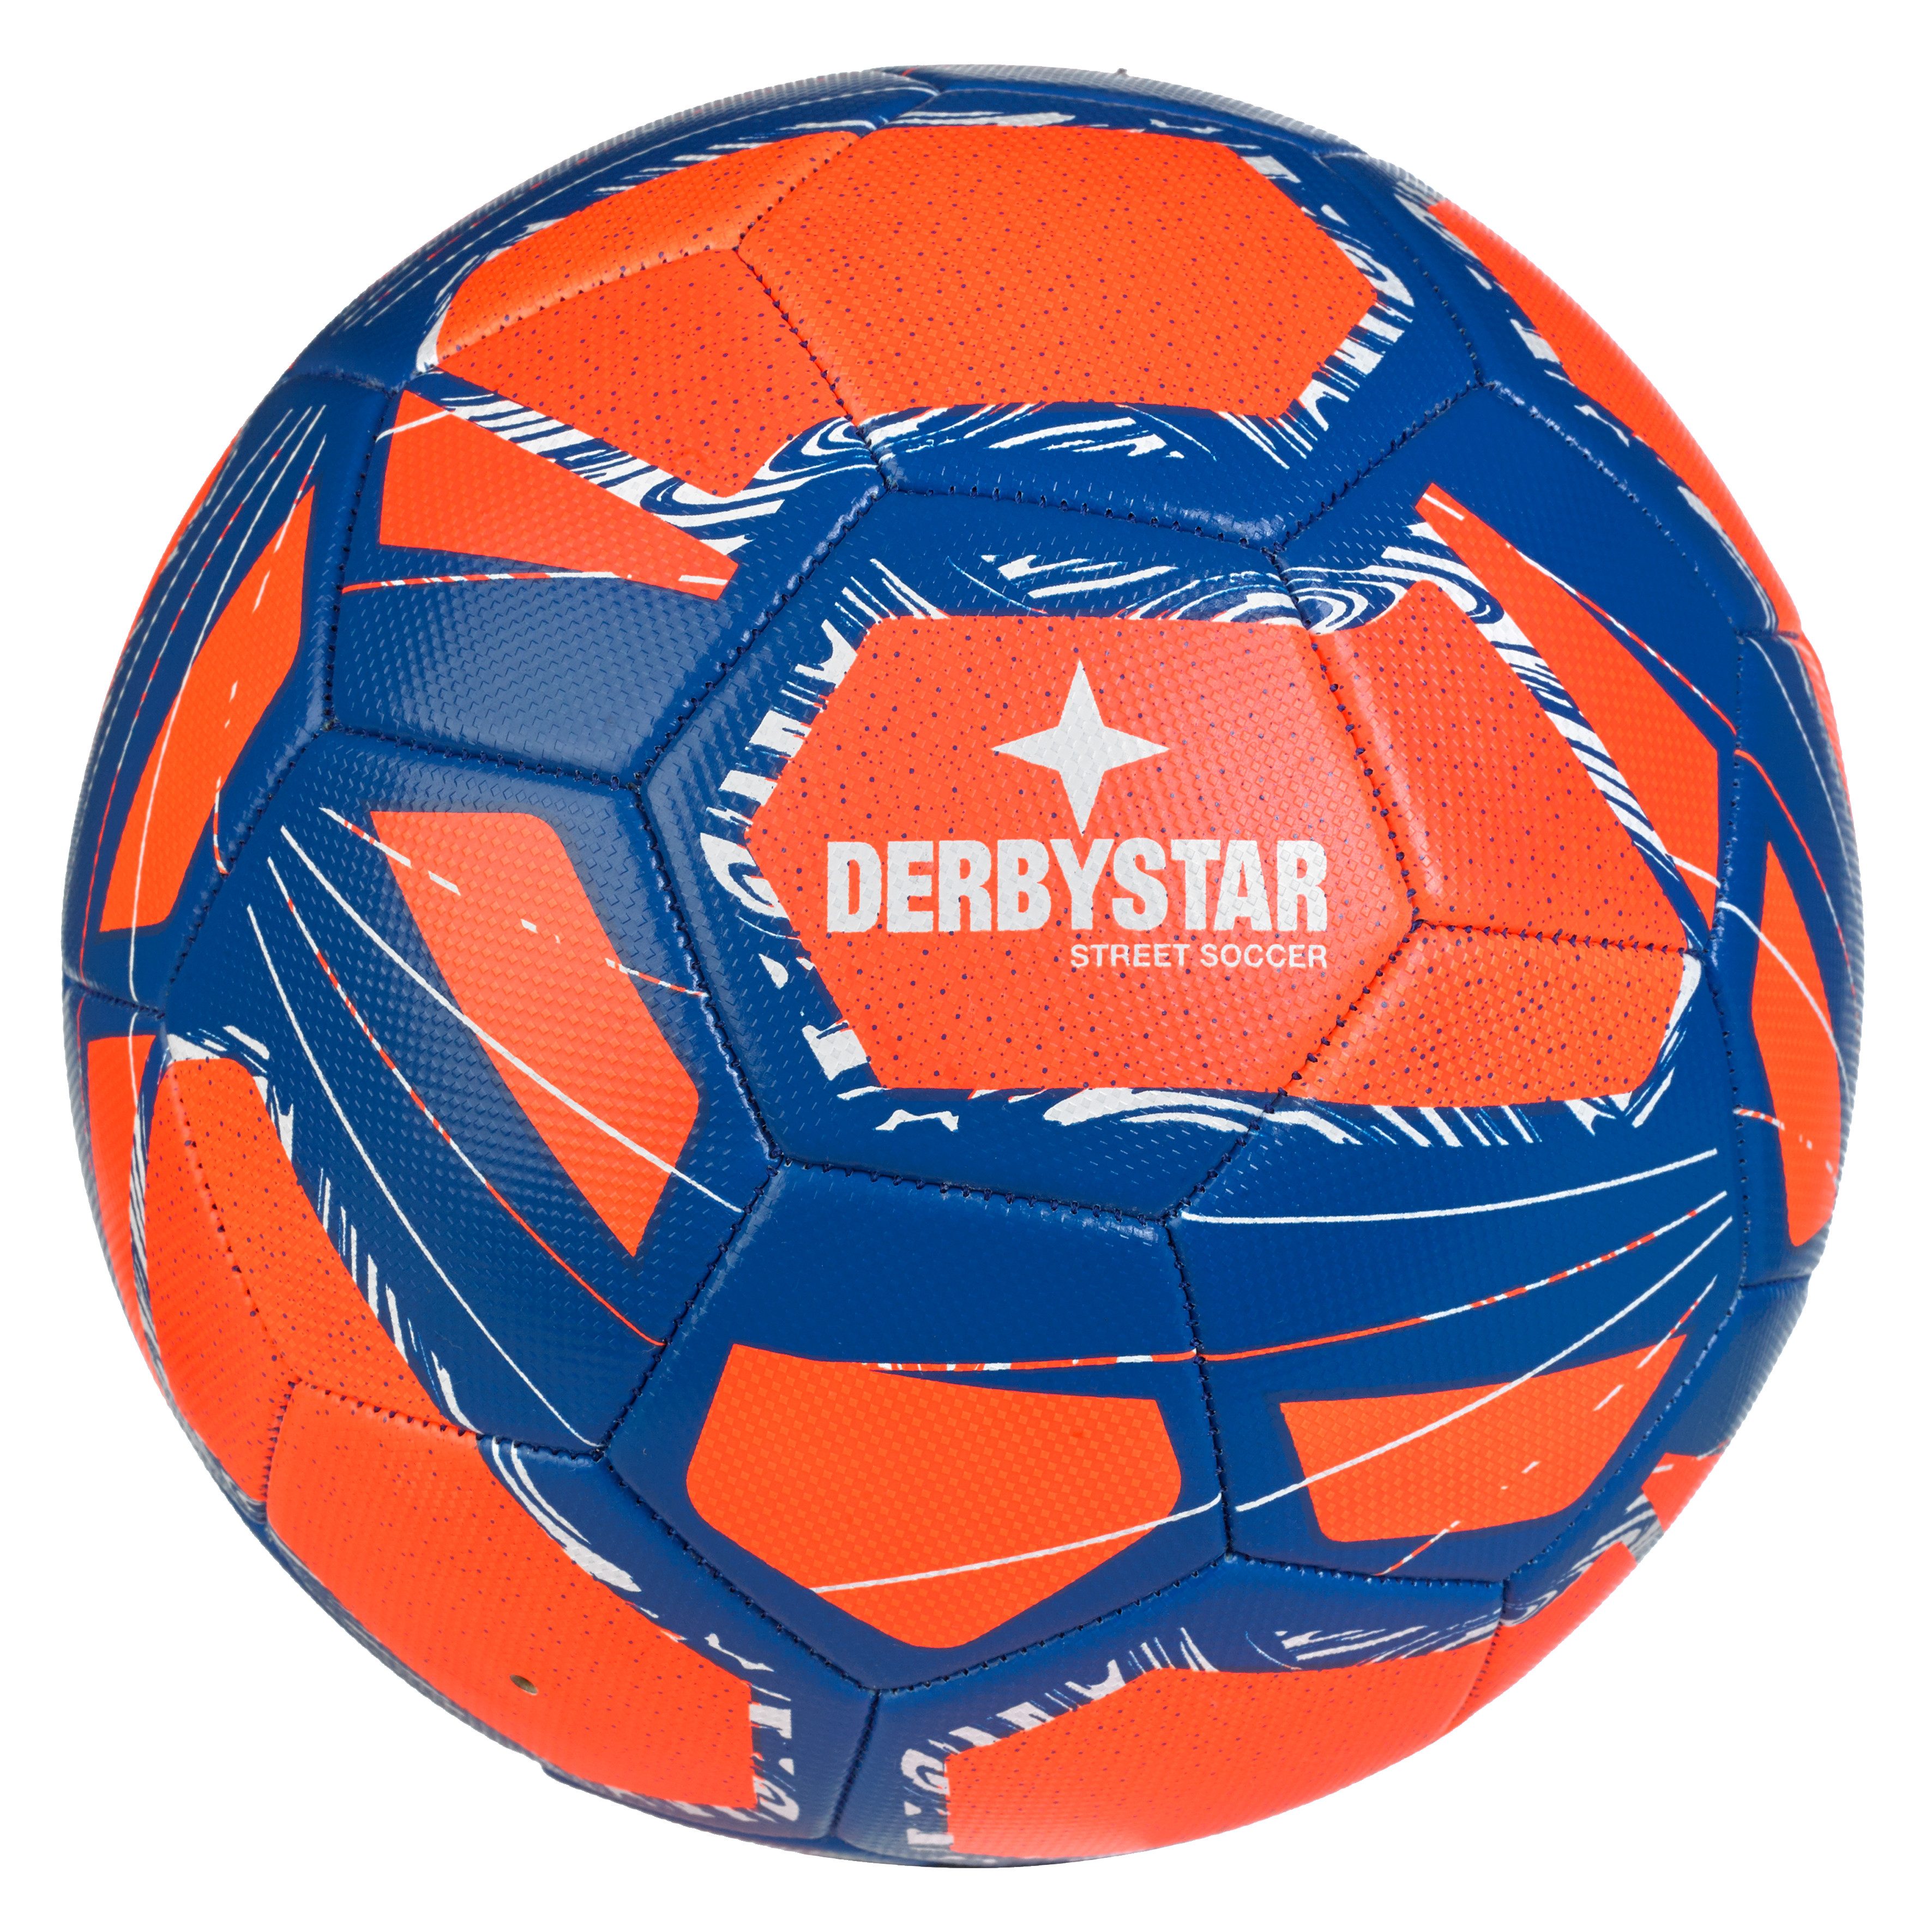 Derbystar Fußball DERBYSTAR Street Soccer v24